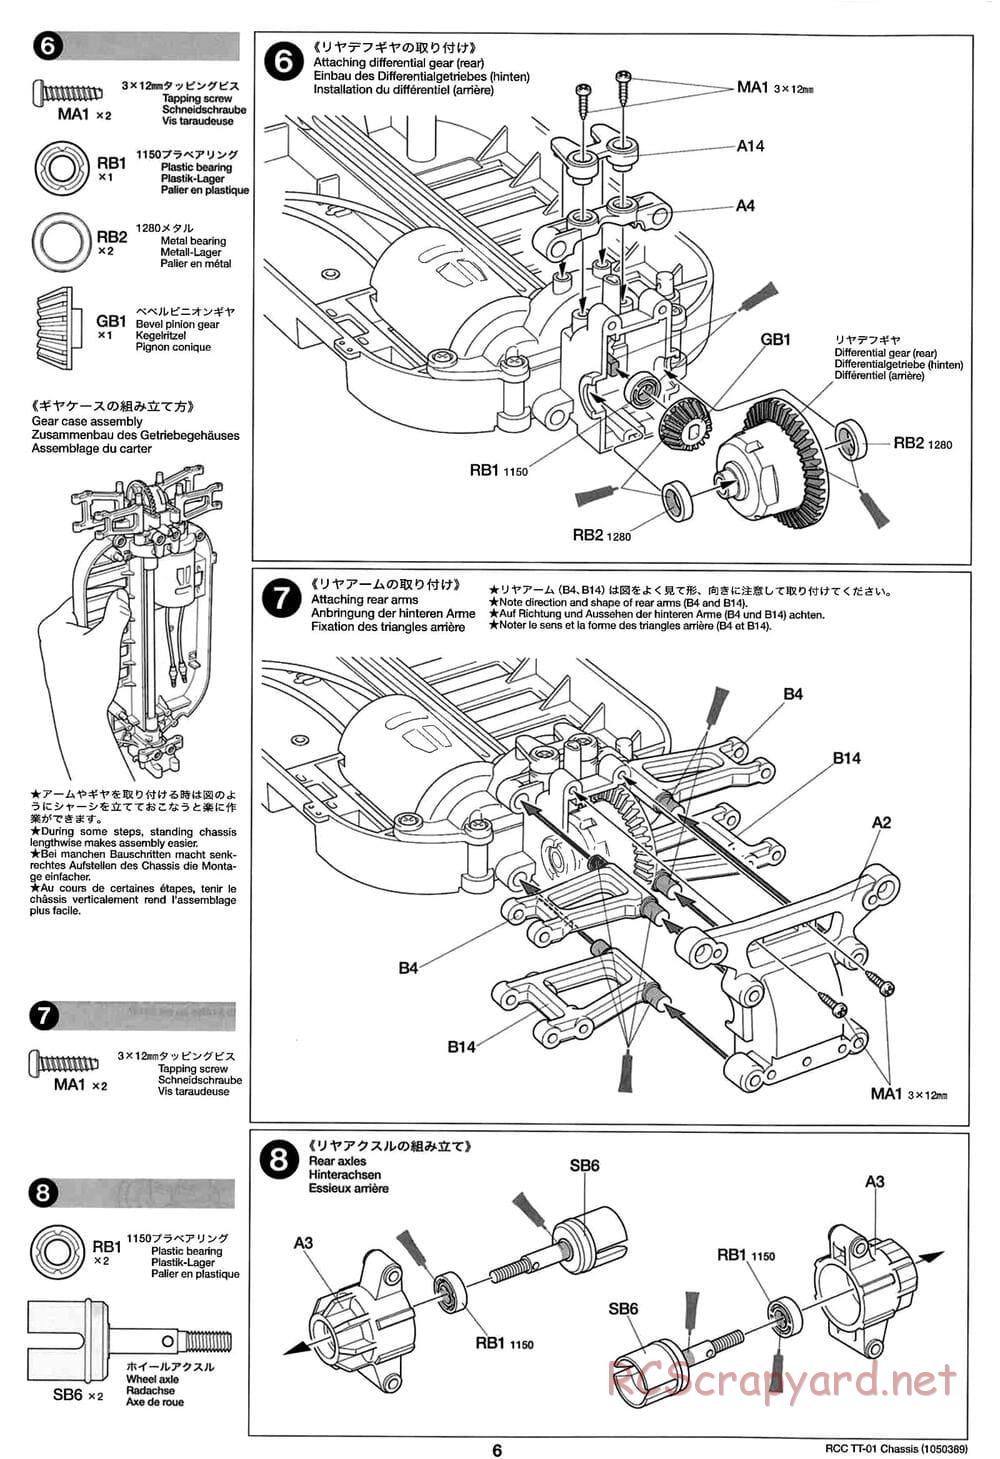 Tamiya - TT-01 Chassis - Manual - Page 6